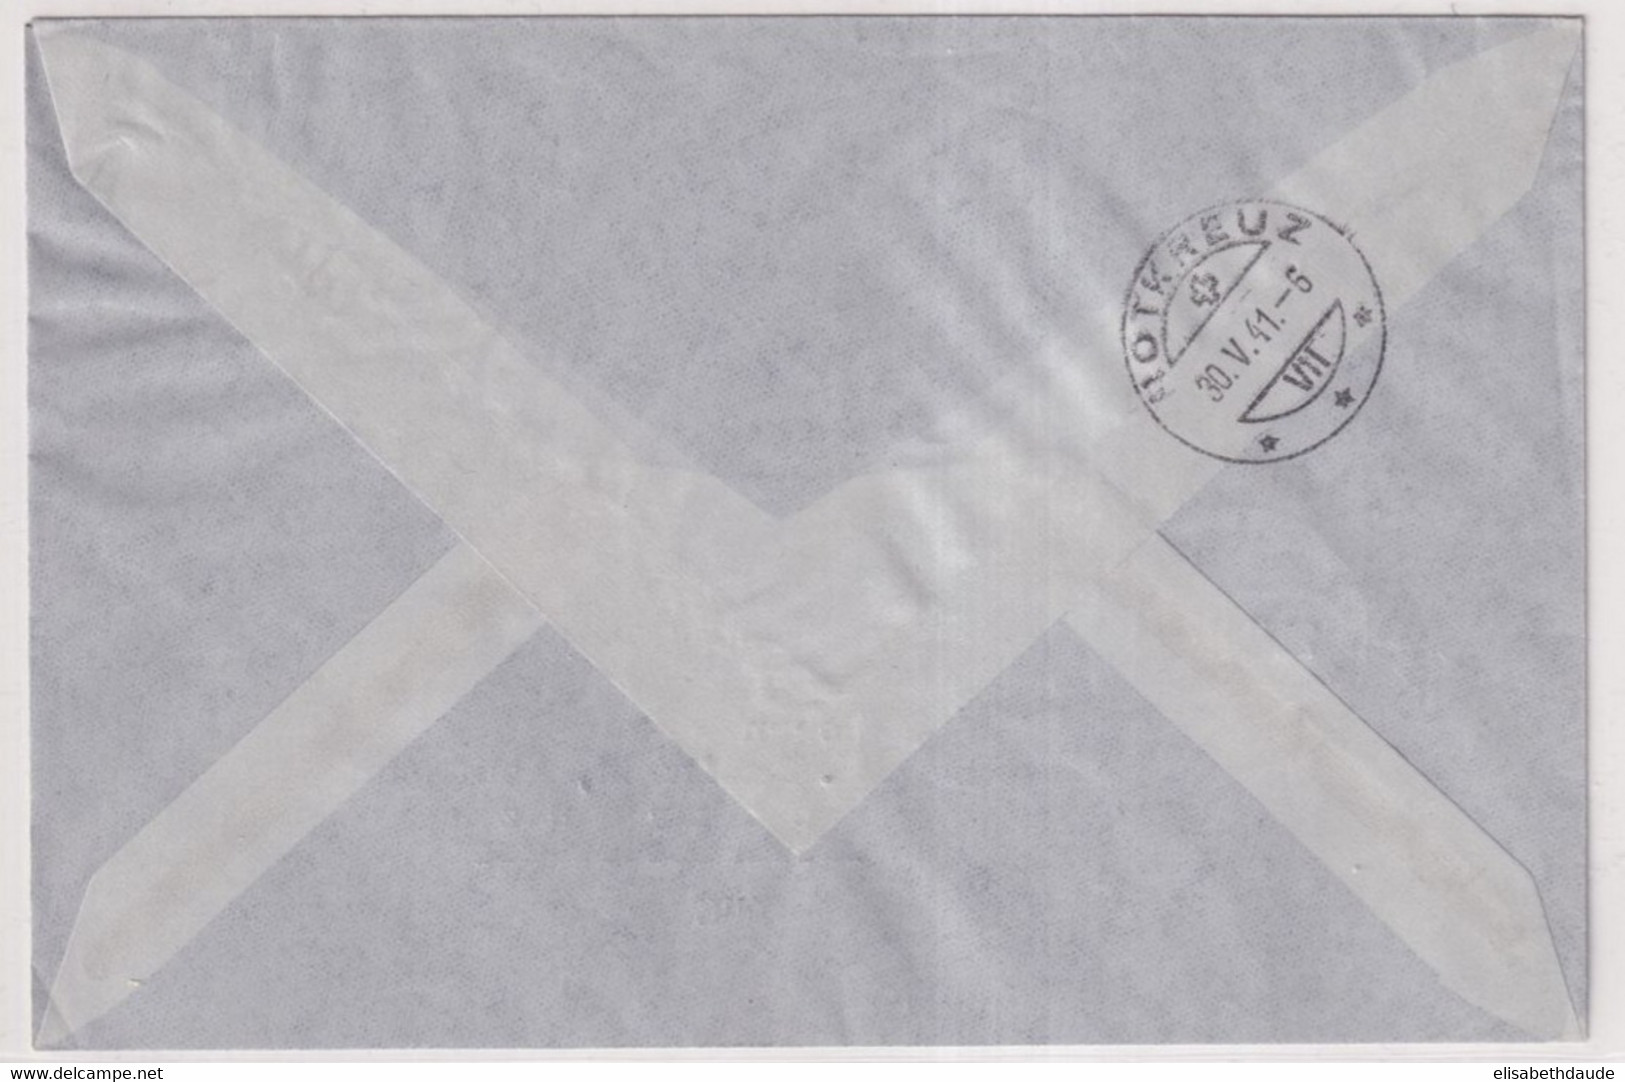 SUISSE - 1941 - POSTE AERIENNE  Zum. 35 VOL SPECIAL PRO AERO BUOCHS à PAYERNE Sur ENVELOPPE => ROTKREUZ ZUG - First Flight Covers